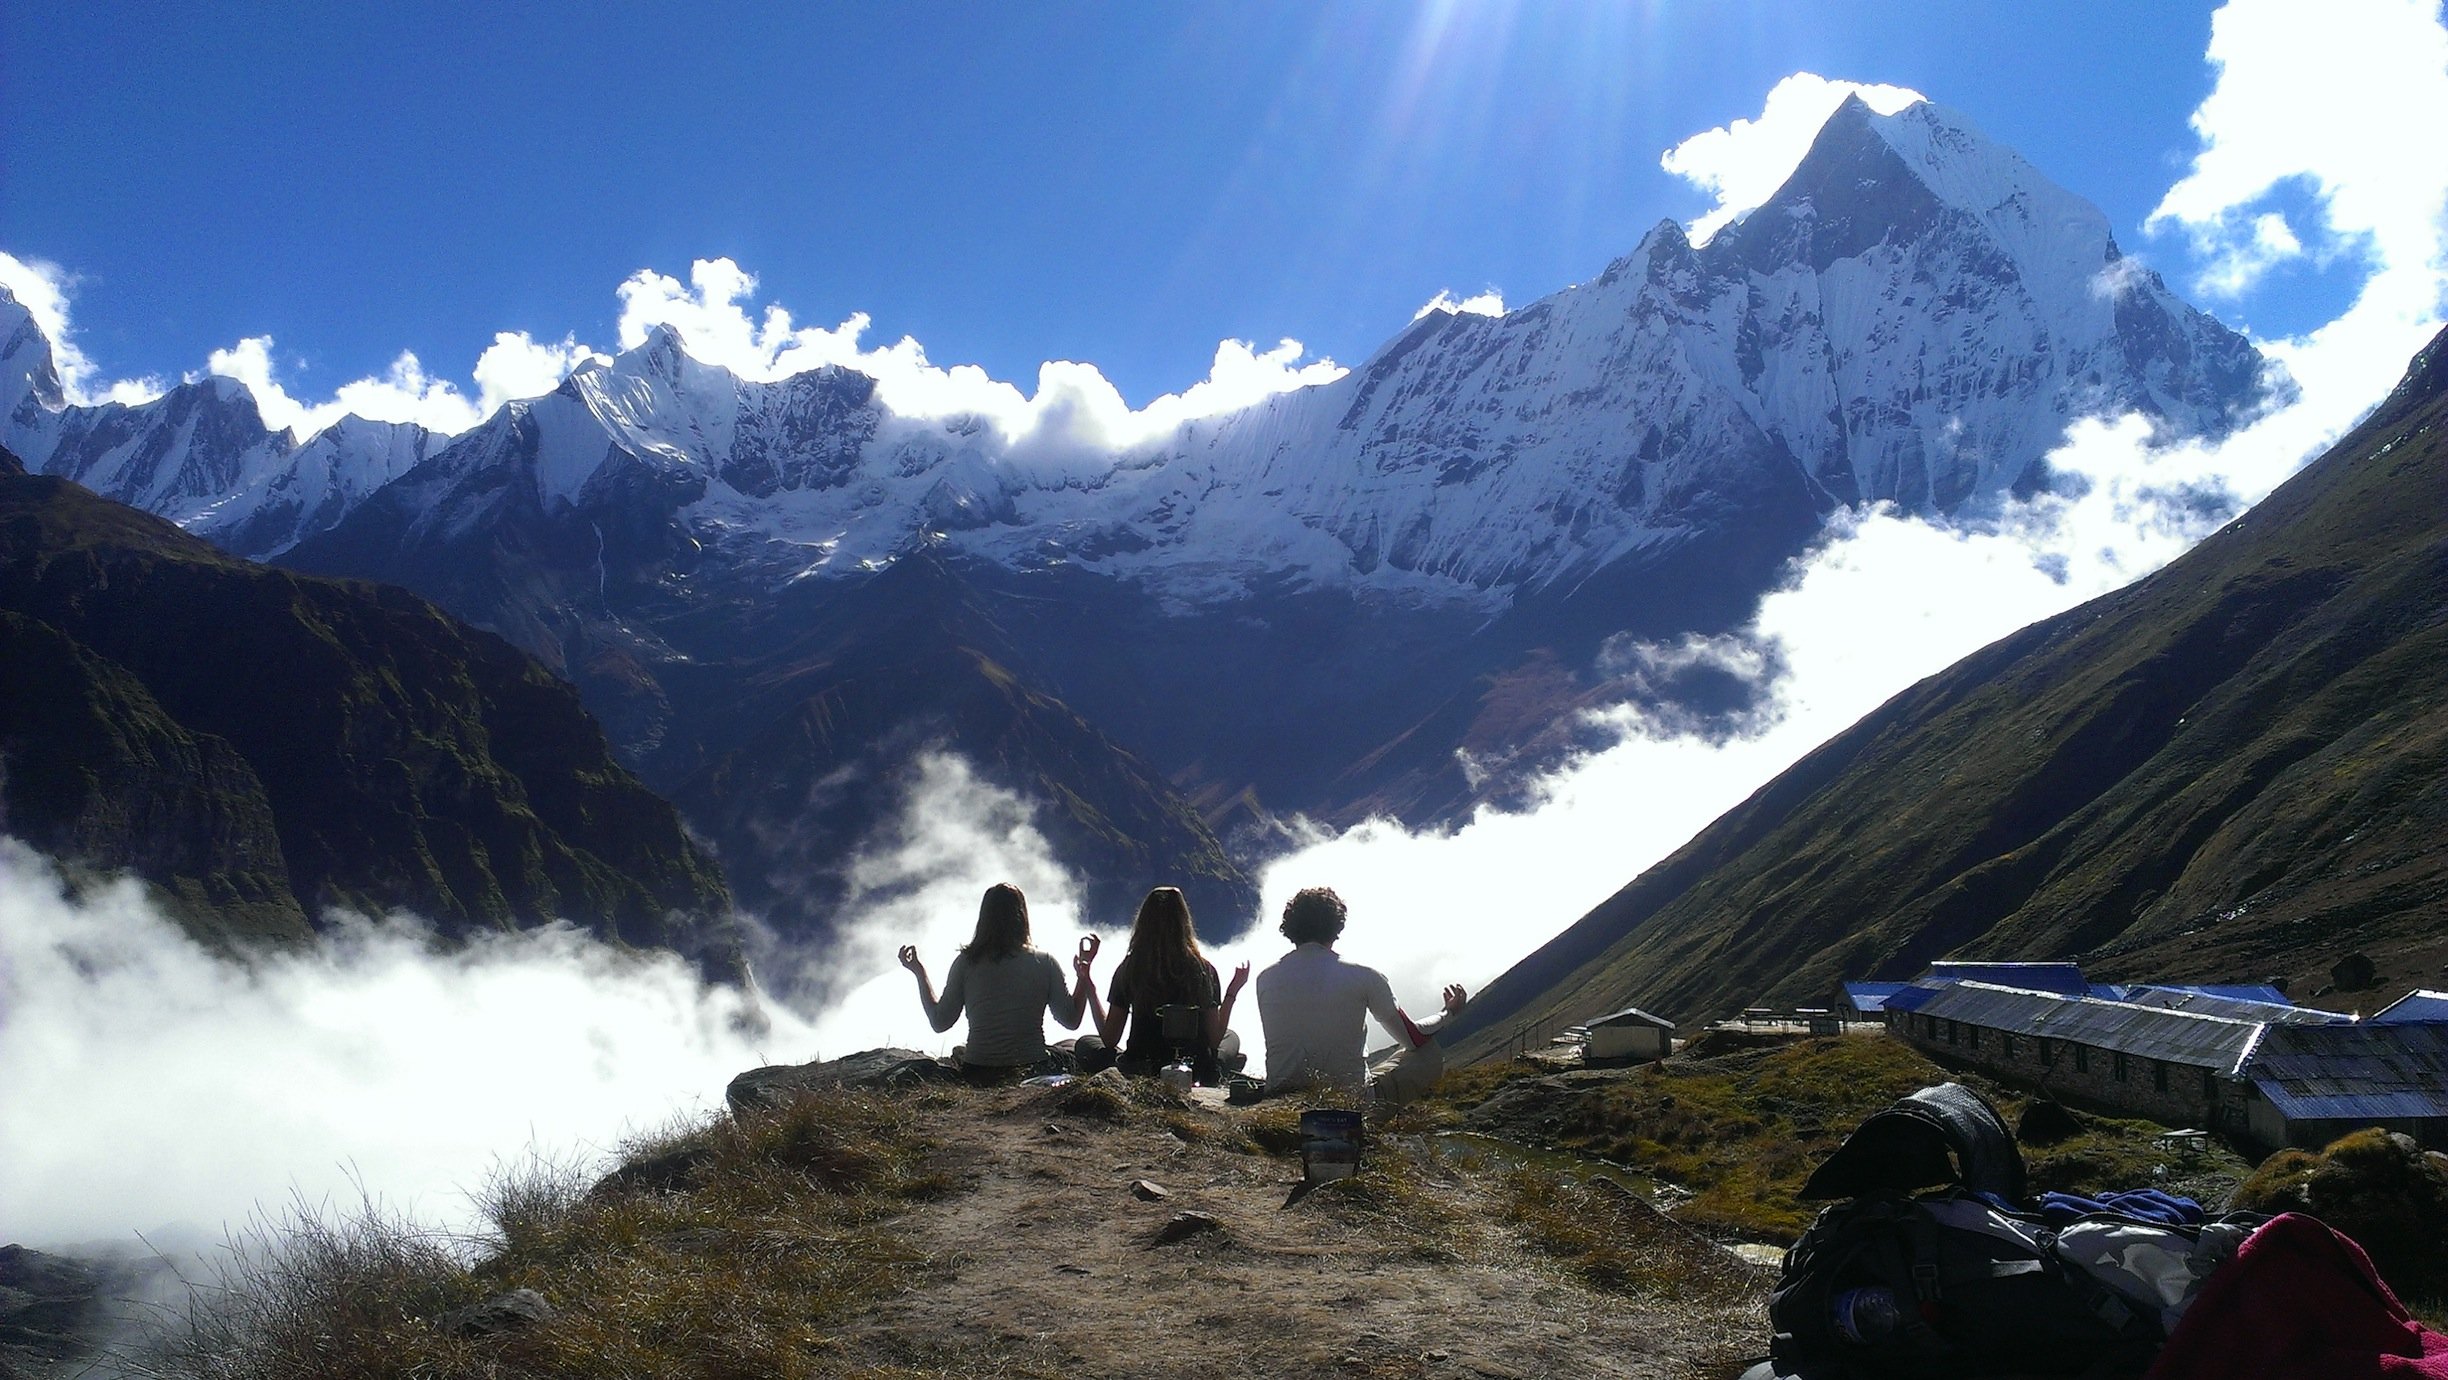 Reisebericht – airFreshing Nepal-Trip 2013: Namaste Nepal – zwei Münchner Frischluftfans im Land der höchsten Berge